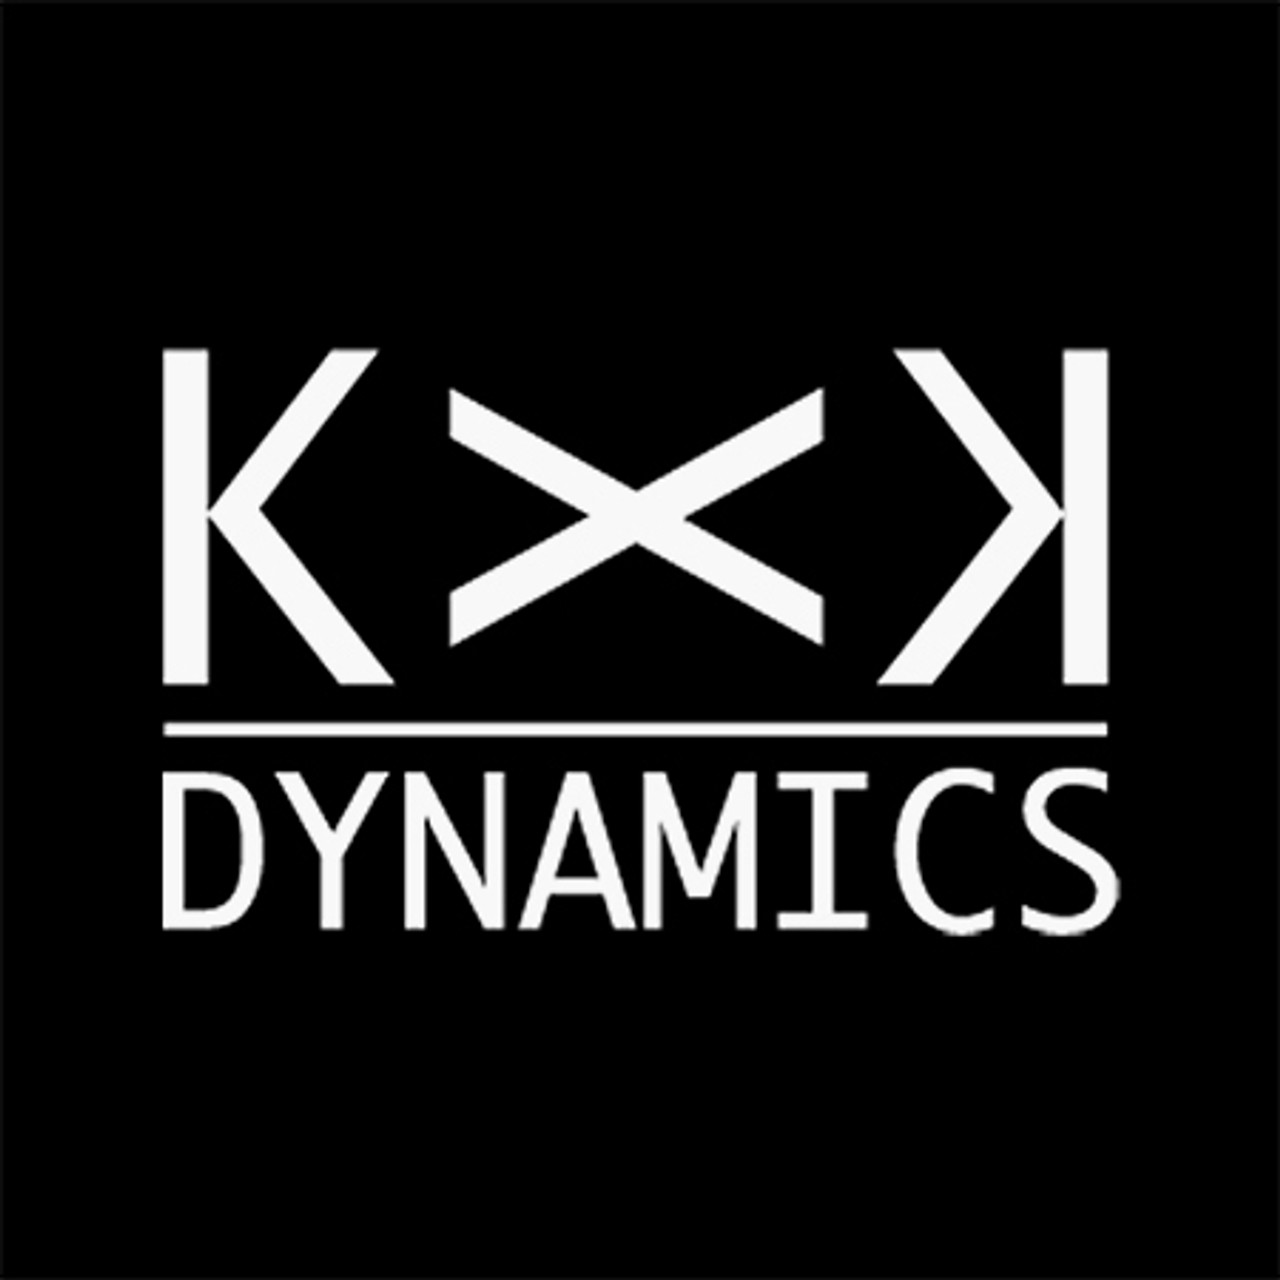 KXK Dynamics